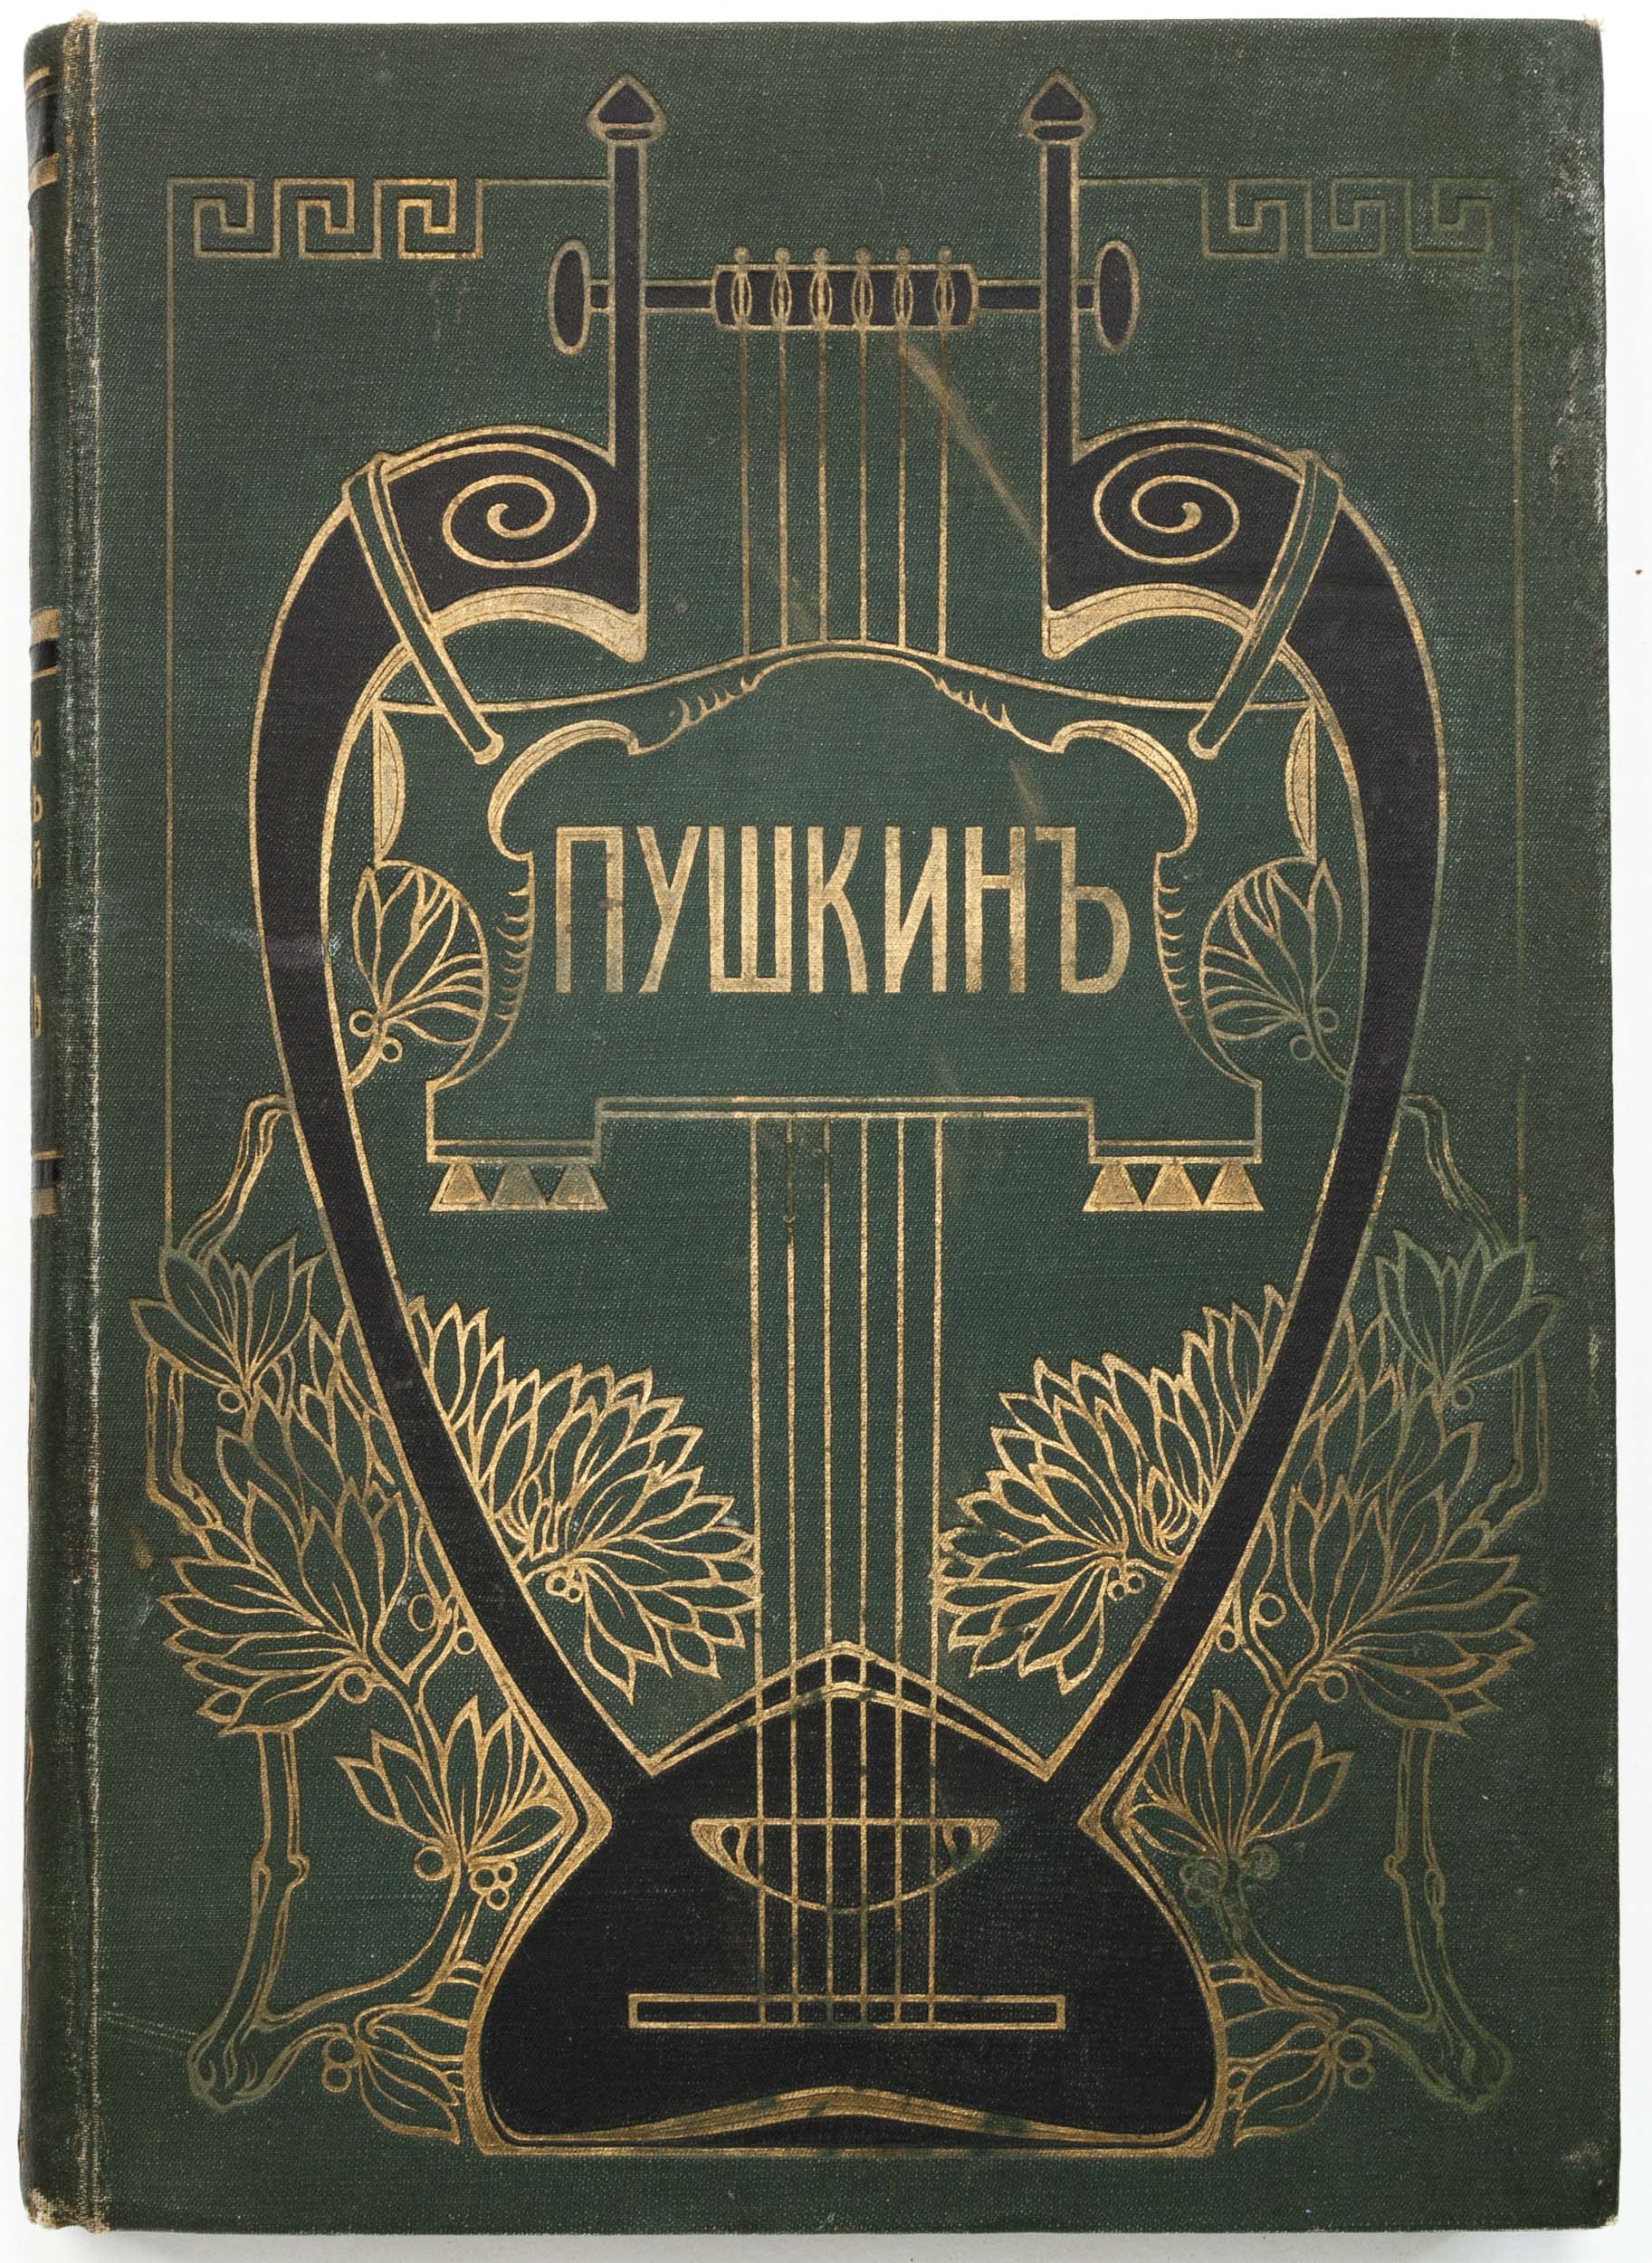 Пушкин, А.С. [Библиотека великих писателей / под ред. С.А. Венгерова]. Т. 4, ч.2.